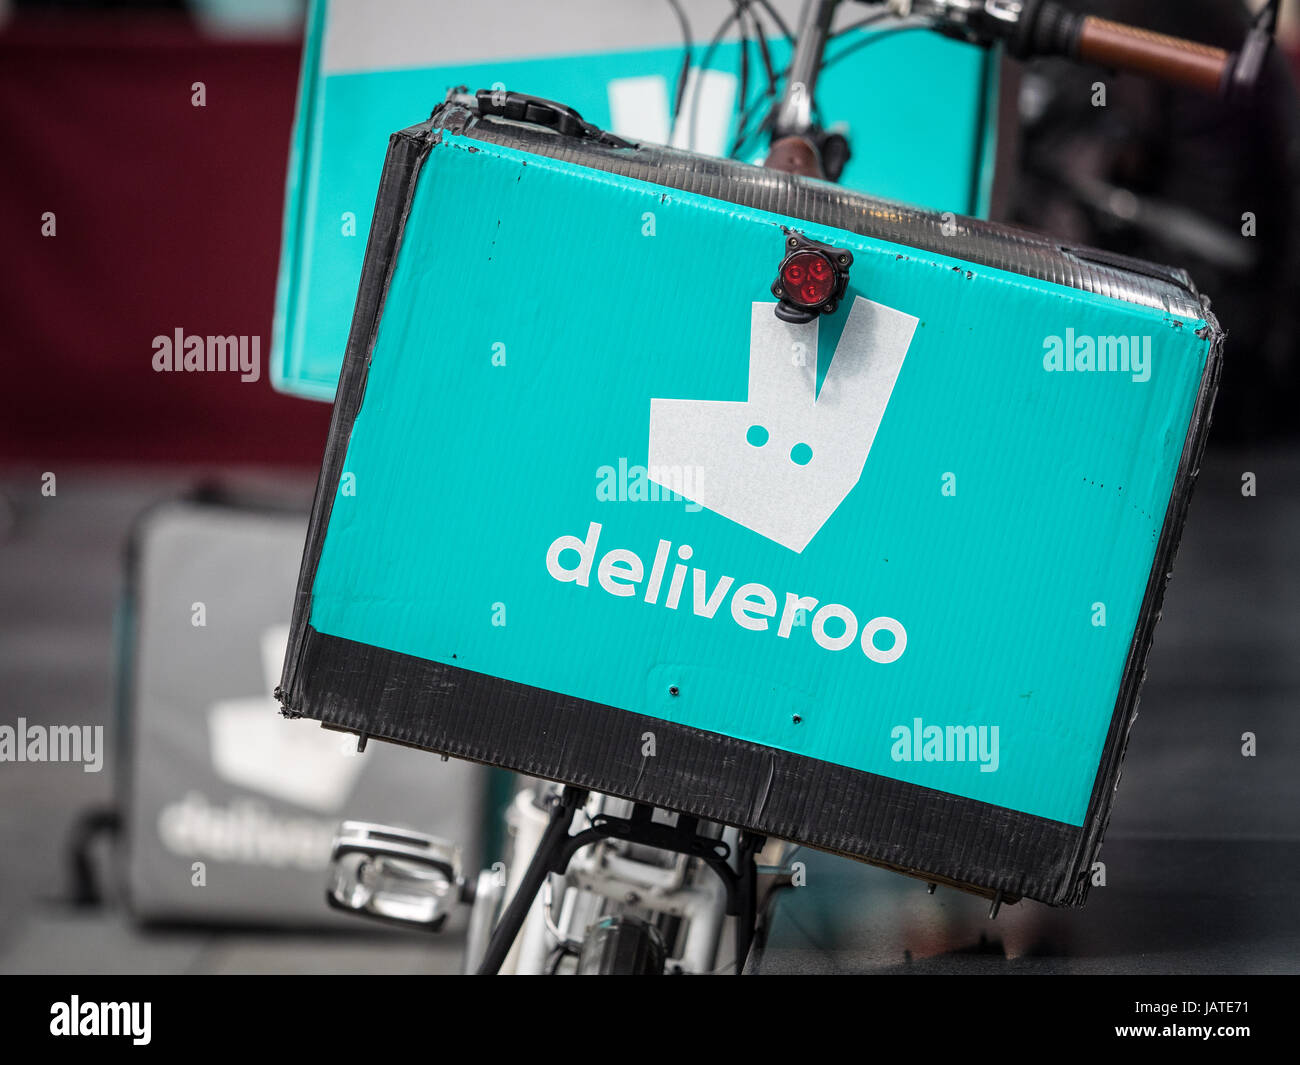 Deliveroo vélos de livraison de nourriture au London's Marché de Spitalfields. Deliveroo est en concurrence avec Uber mange dans le lucratif marché de fourniture de produits alimentaires Banque D'Images